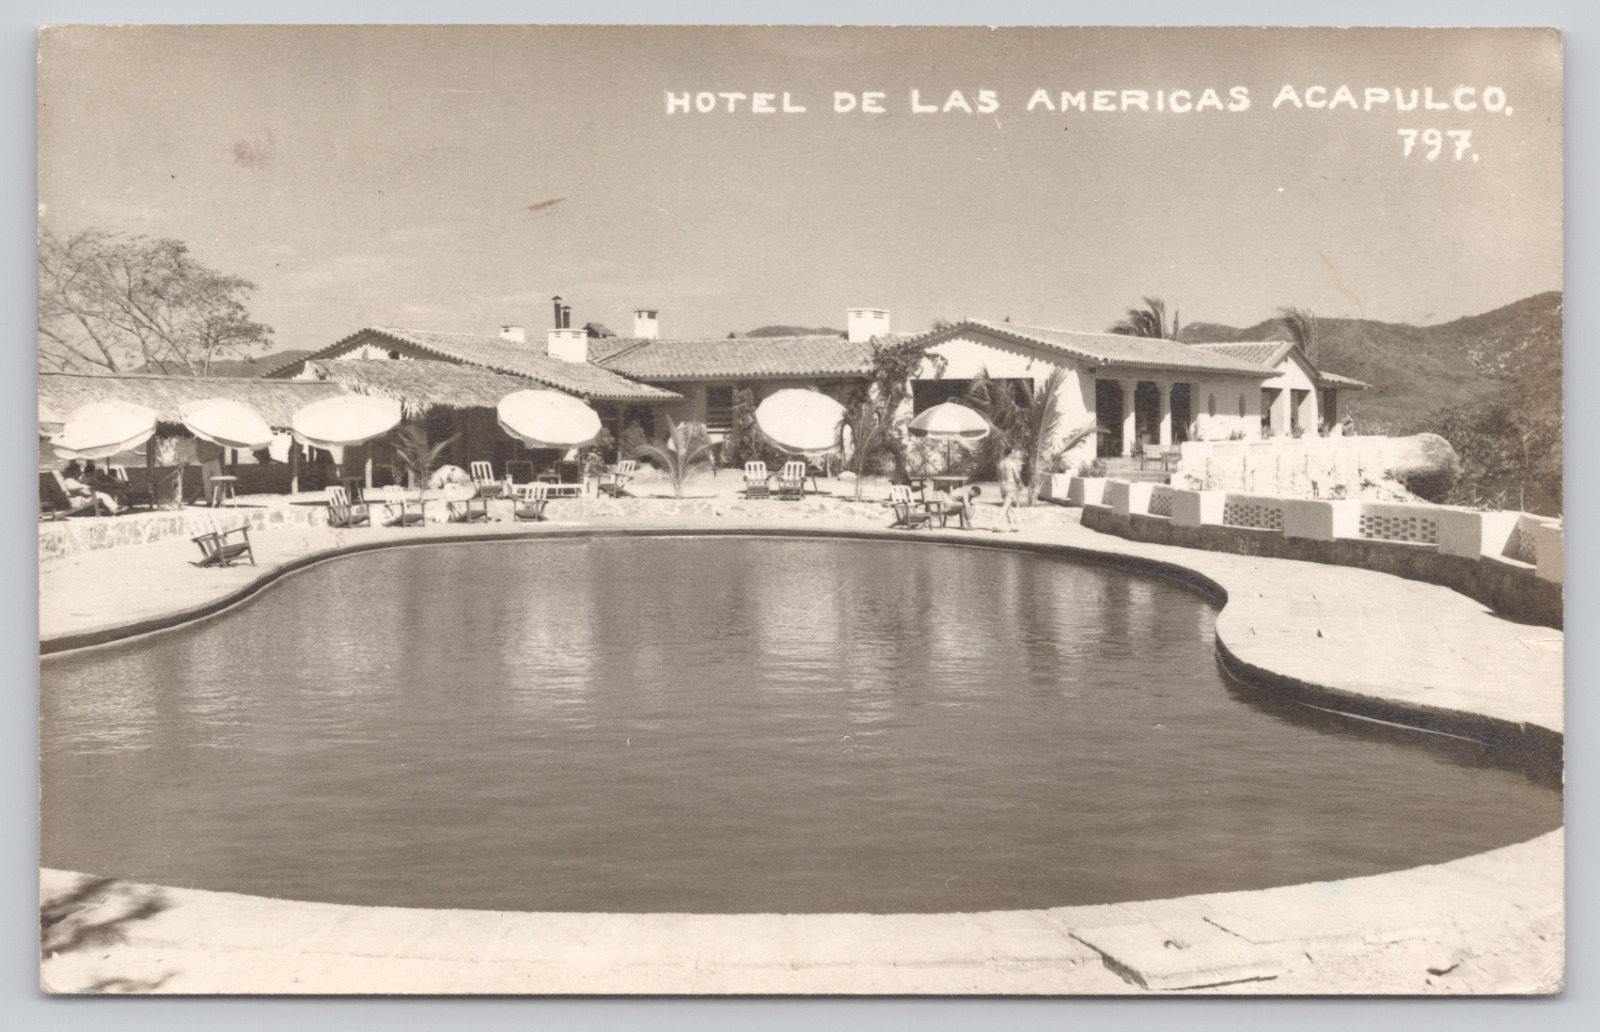 Hotel de Las Americas Acapulco, Mexico c1948 RPPC #797 Pool Umbrellas Vacation